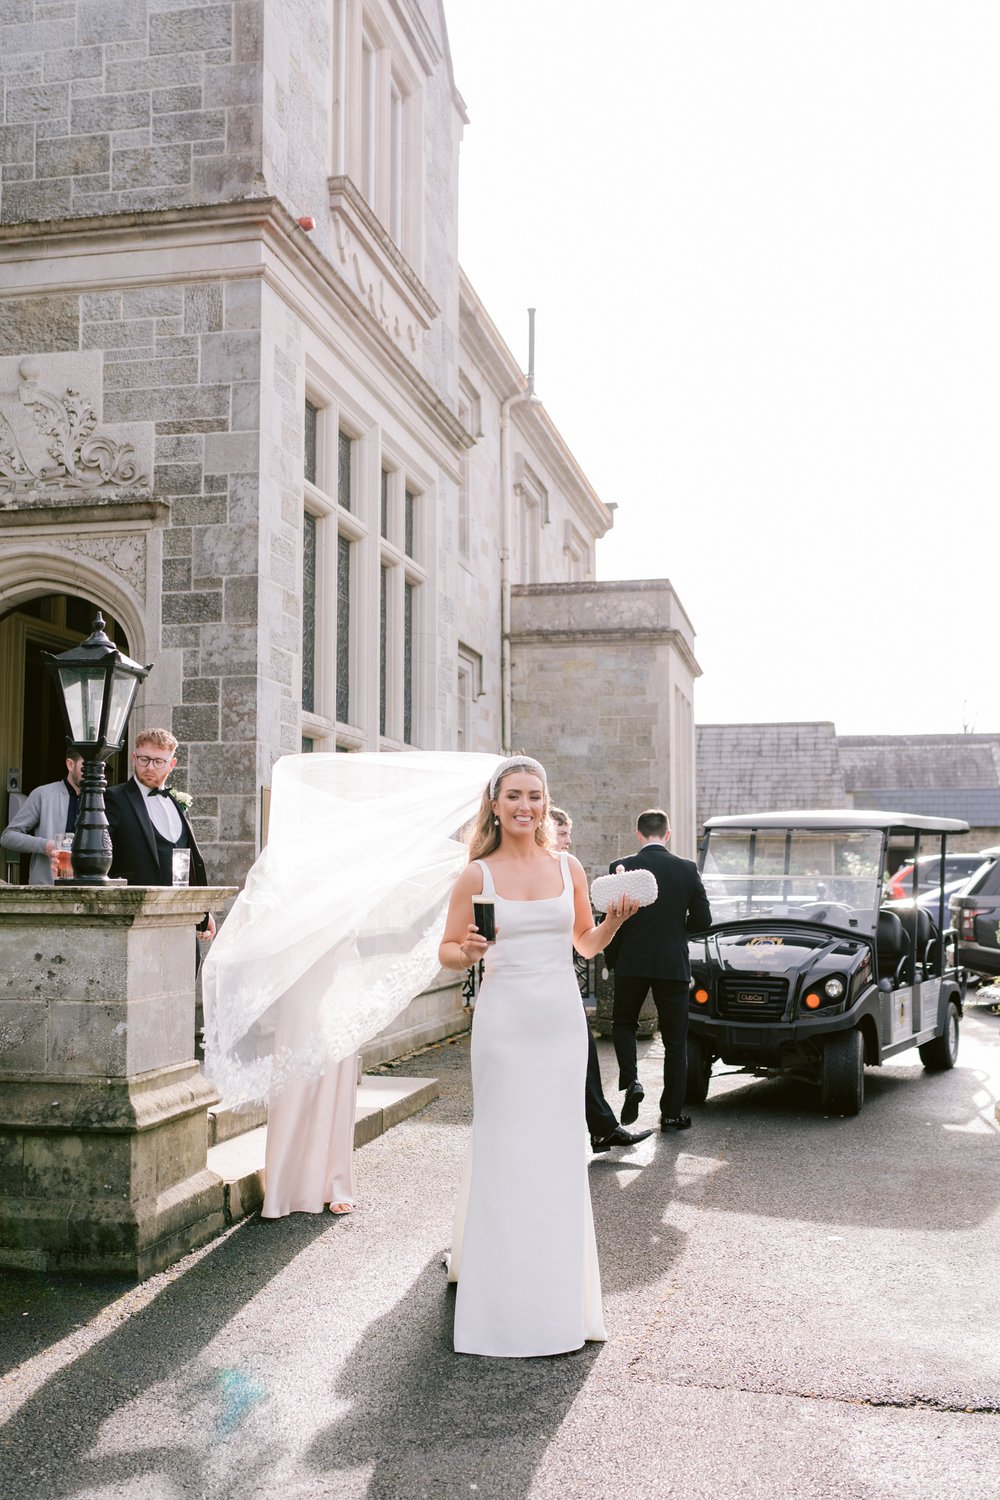 Lough Rynn wedding, wedding photographer Ireland, black tie wedding, Castle wedding Ireland,-52.jpg